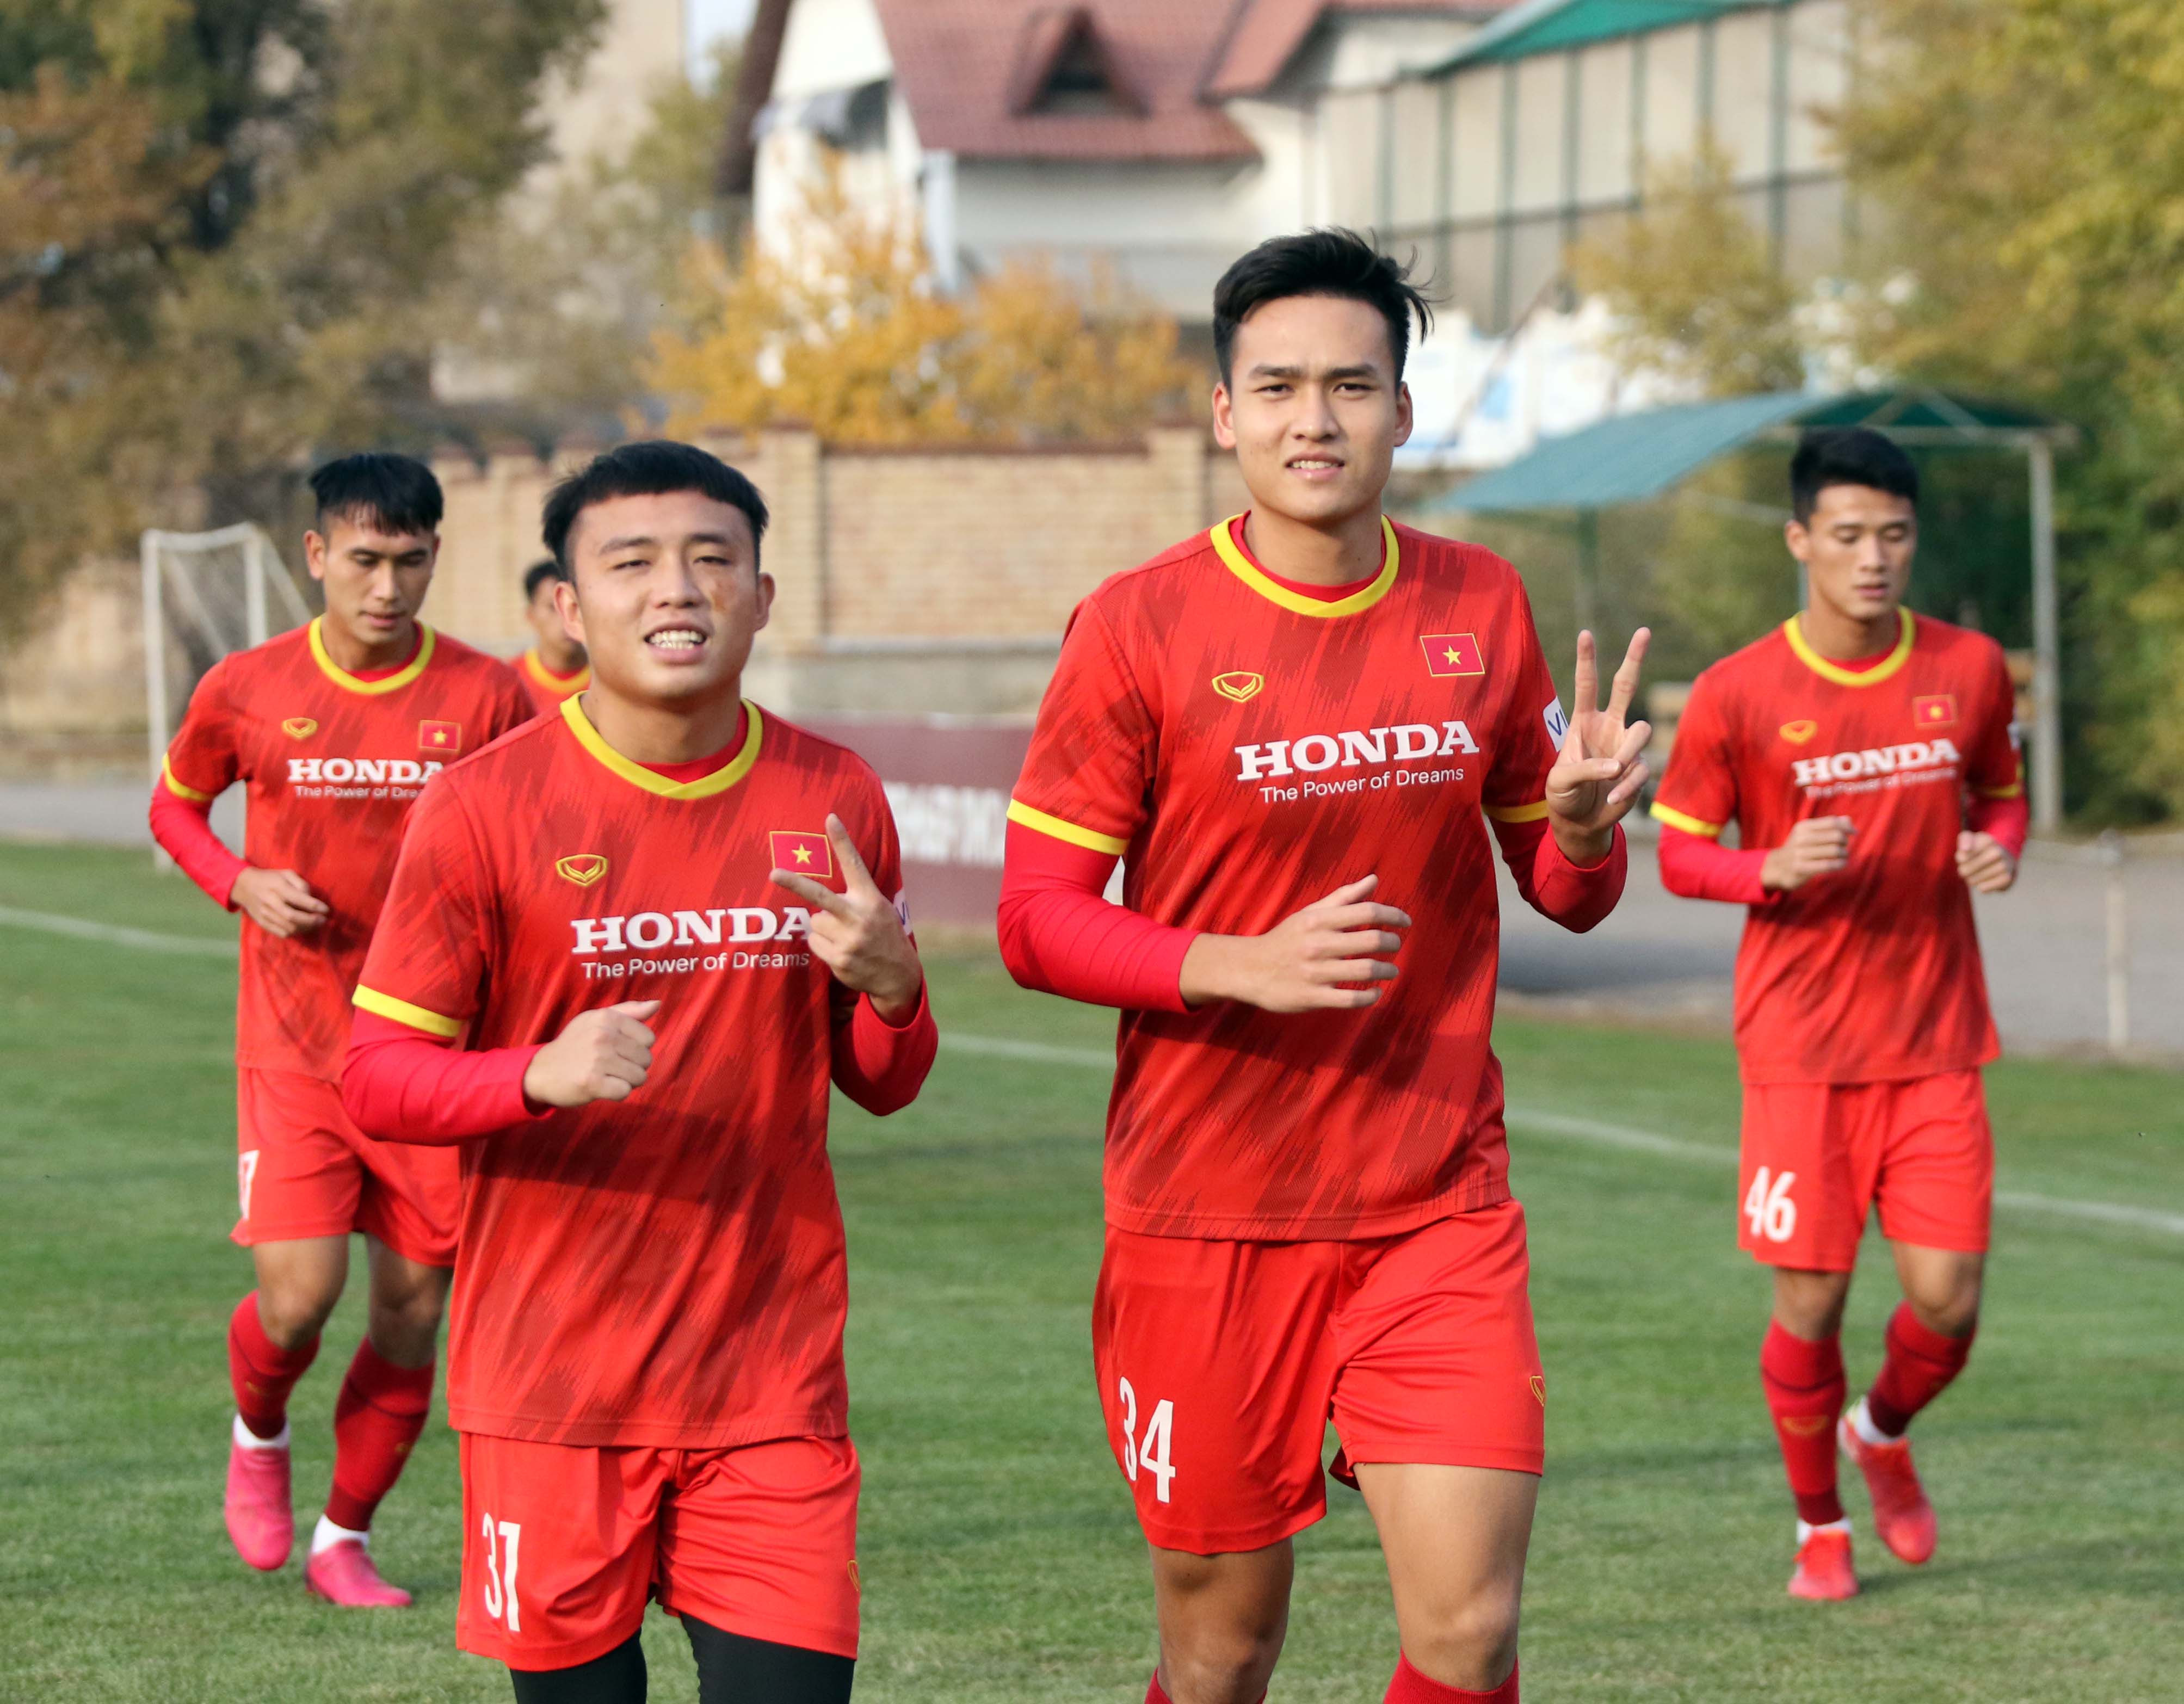 Tại bảng I U23 Việt Nam được đánh giá là cửa trên khi chỉ phải đối đầu với U23 Đài Bắc Trung Hòa và U23 Myanmar. Thế nên mục tiêu của U23 Việt Nam ở vòng loại sắp tới là thắng cả 2 trận để qua đó giành vé dự VCK U23 châu Á 2022. Ảnh: VFF